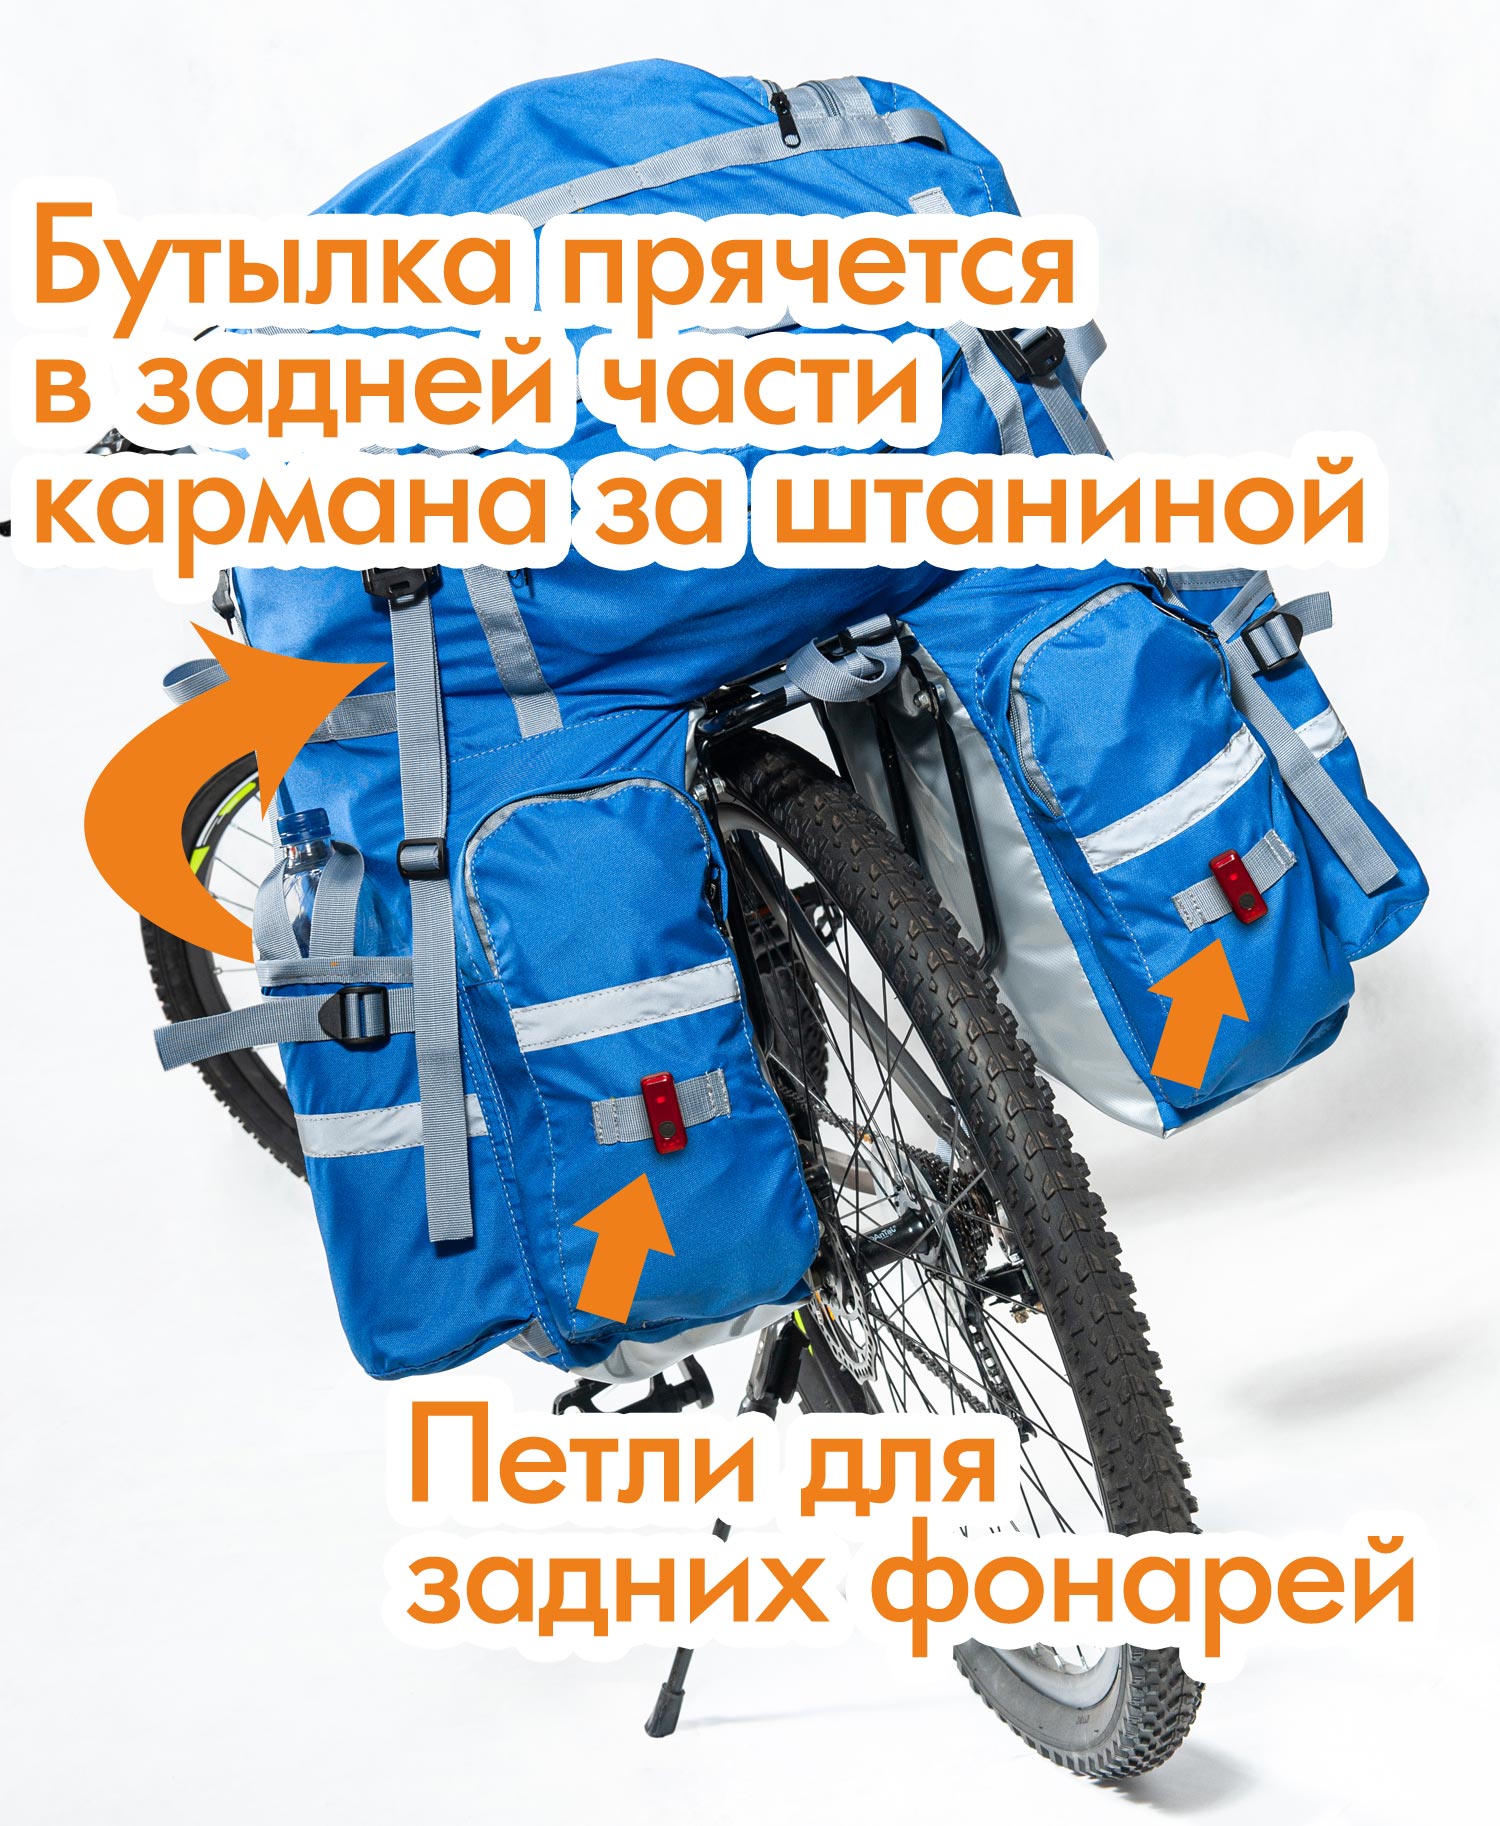 Велорюкзак Course на багажник (велоштаны) 50-80+ литров, особенности конструкции